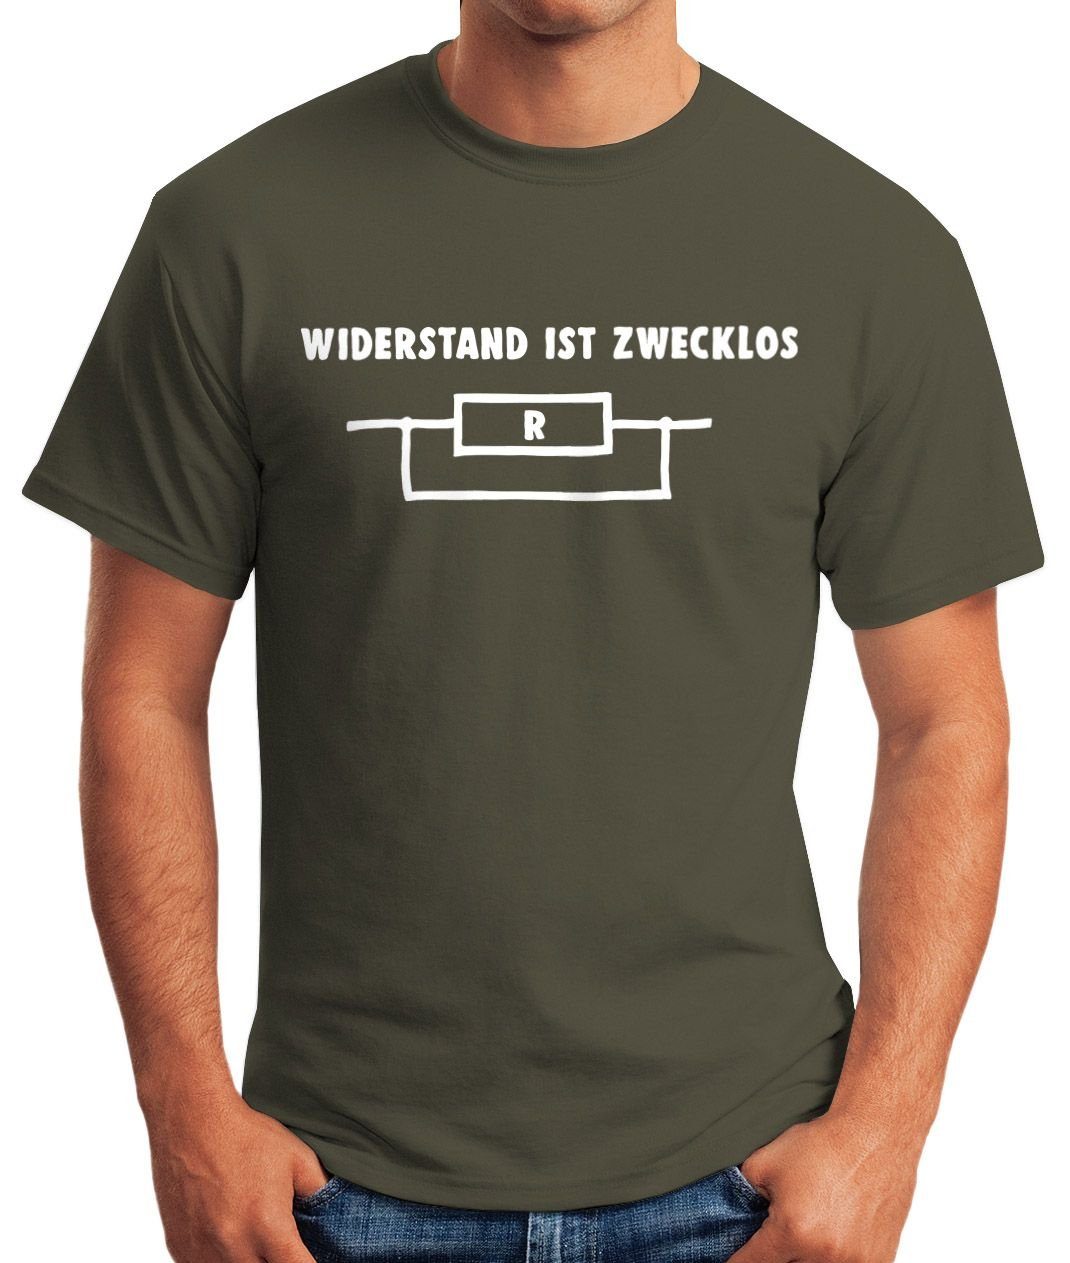 MoonWorks Print-Shirt ist Moonworks® Shirt Widerstand Herren T-Shirt zwecklos mit grün Print